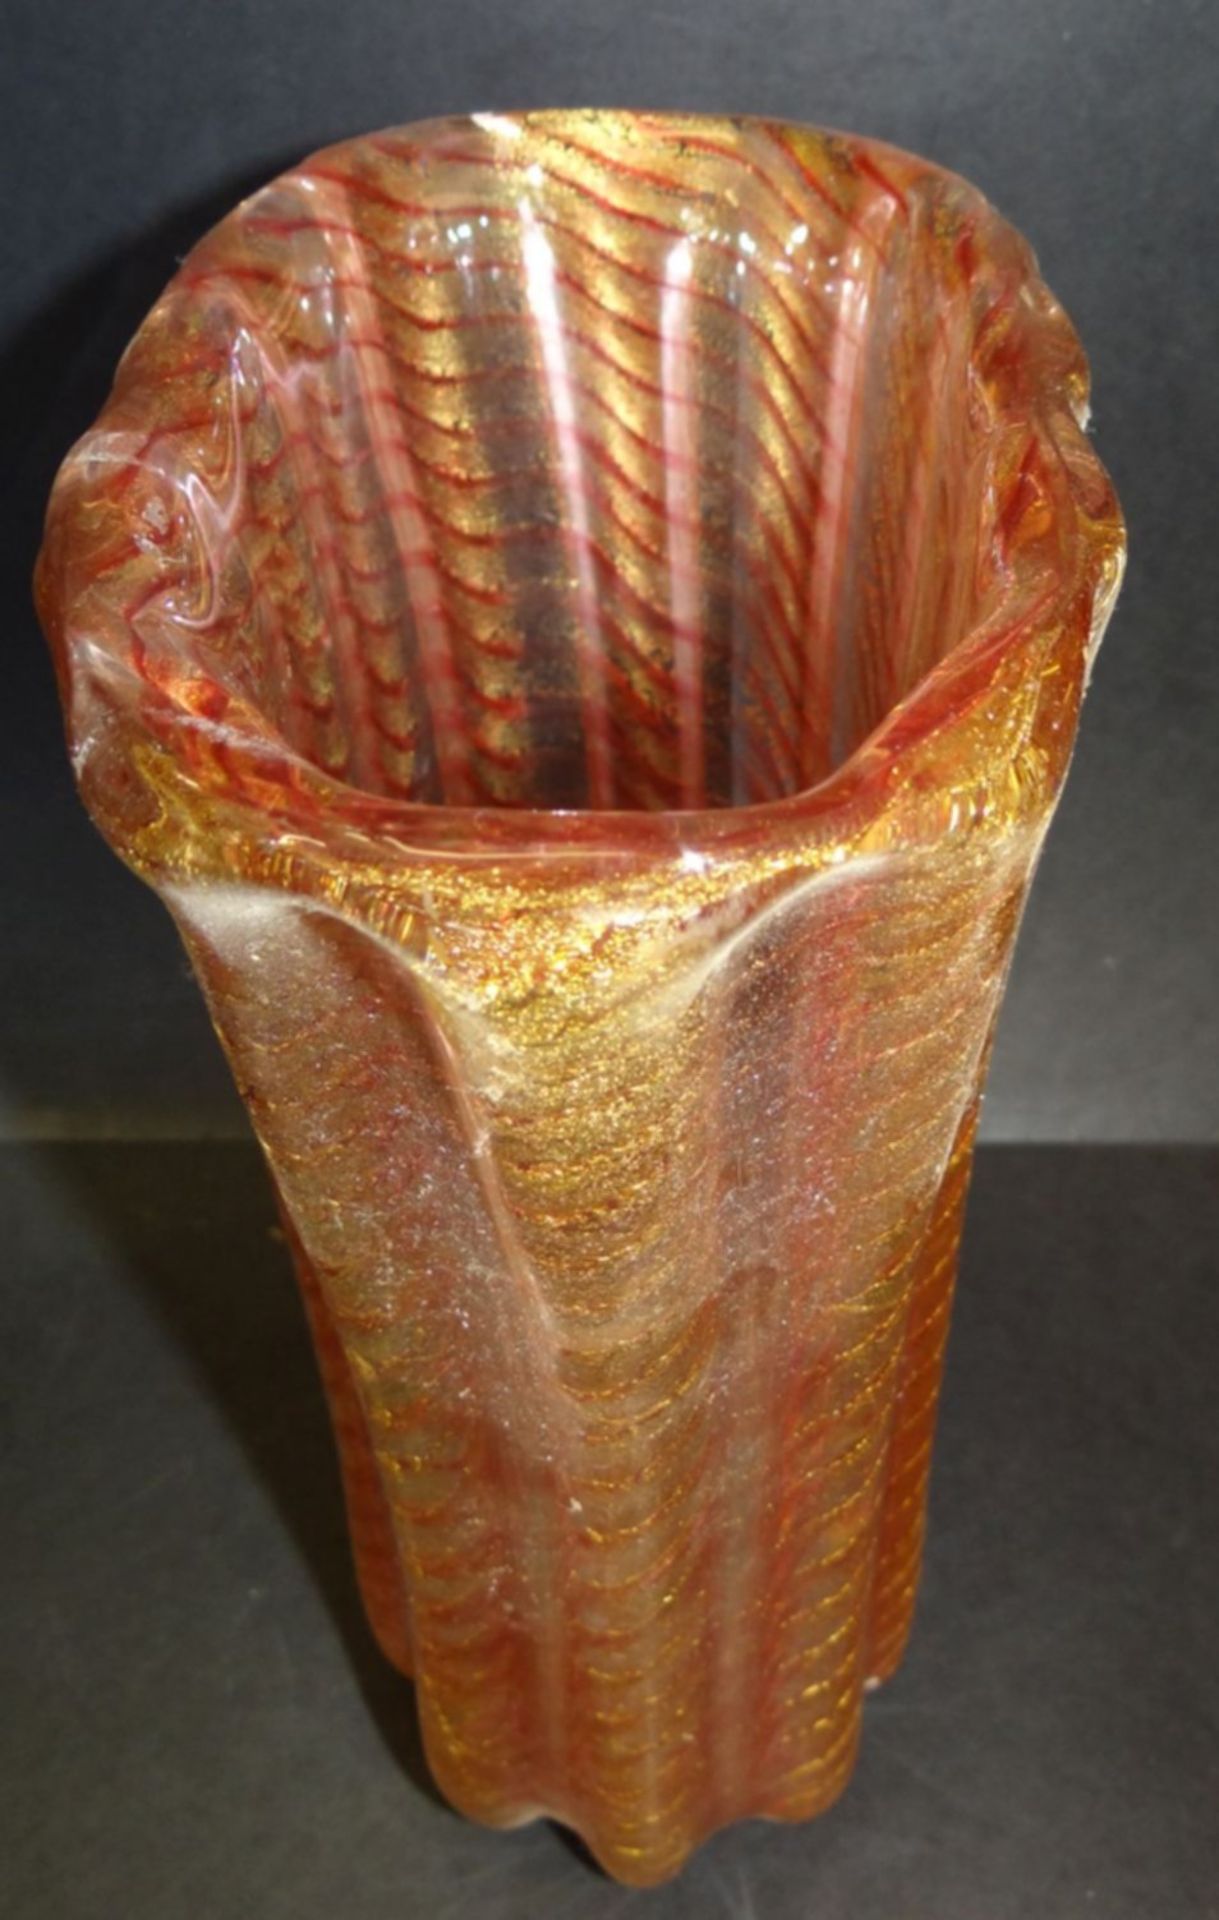 grosse ovoide Vase "Barovier&Toso", Murano, Goldeinschmelzzungen und rote Streifen, H-25 cm, B-20 - Bild 3 aus 5